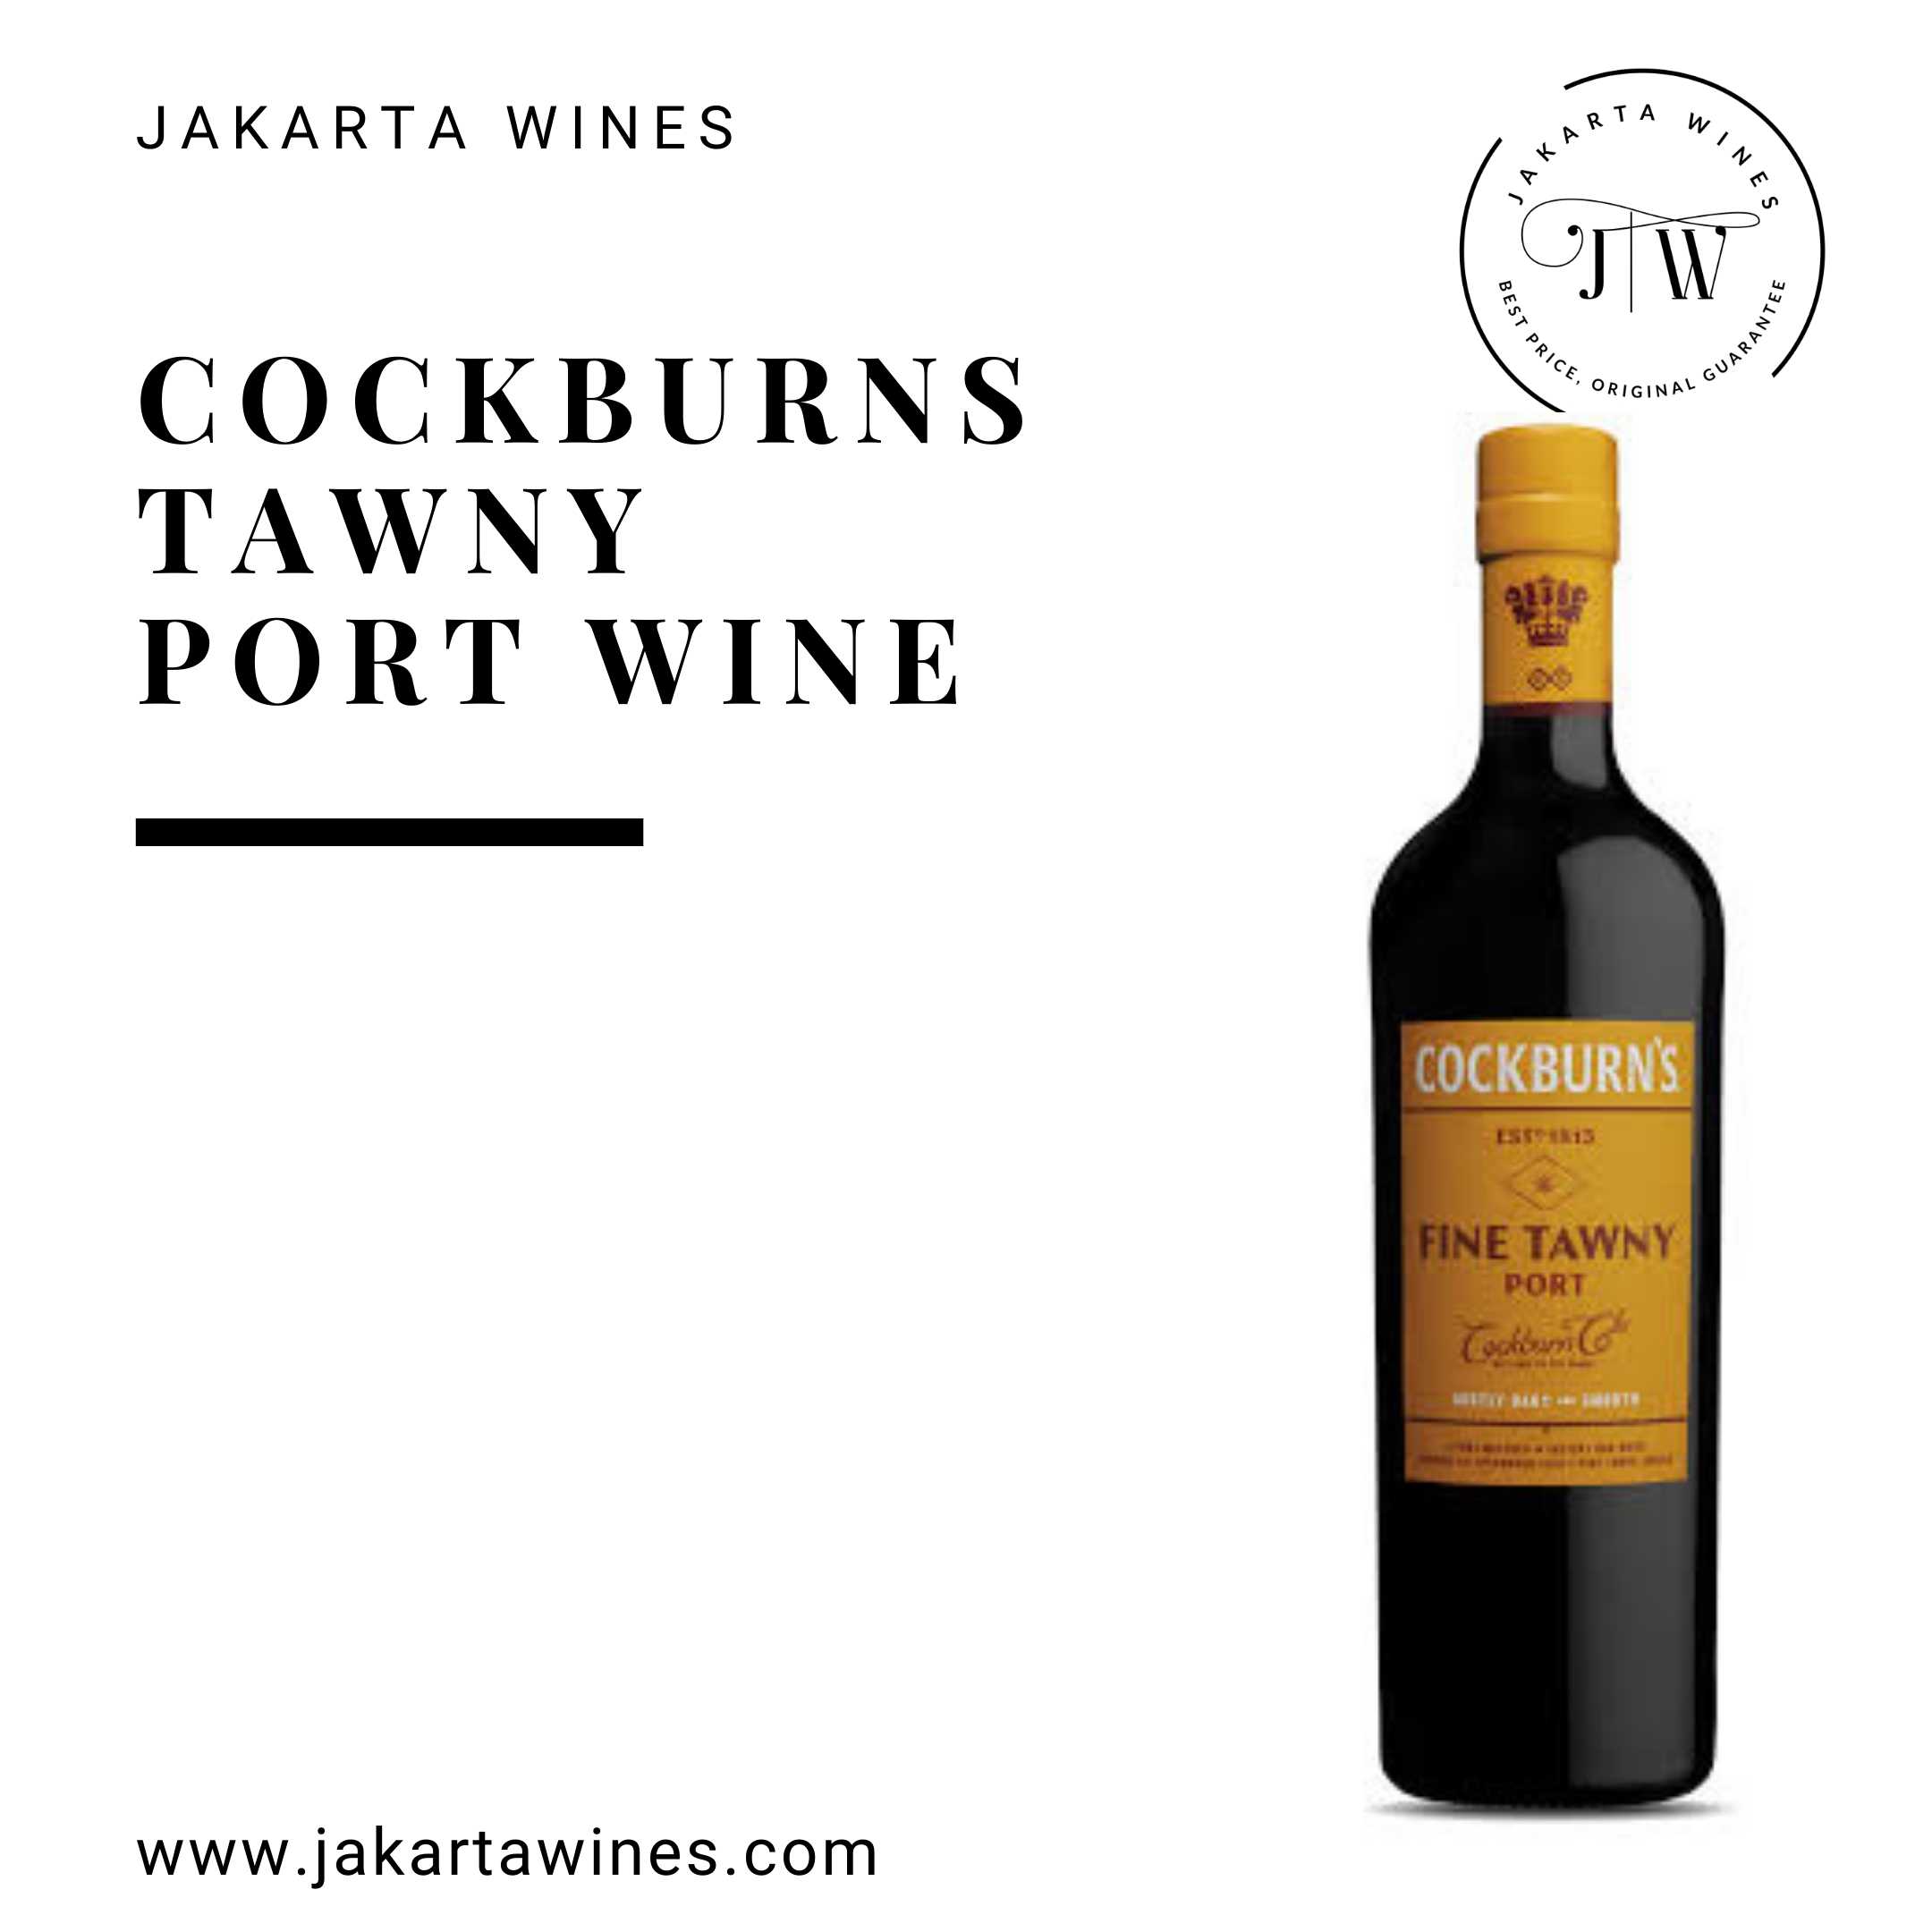 Harga Wine Jakarta Pengiriman Spirits, terjangkau, | Spirits Wine gratis* Jual